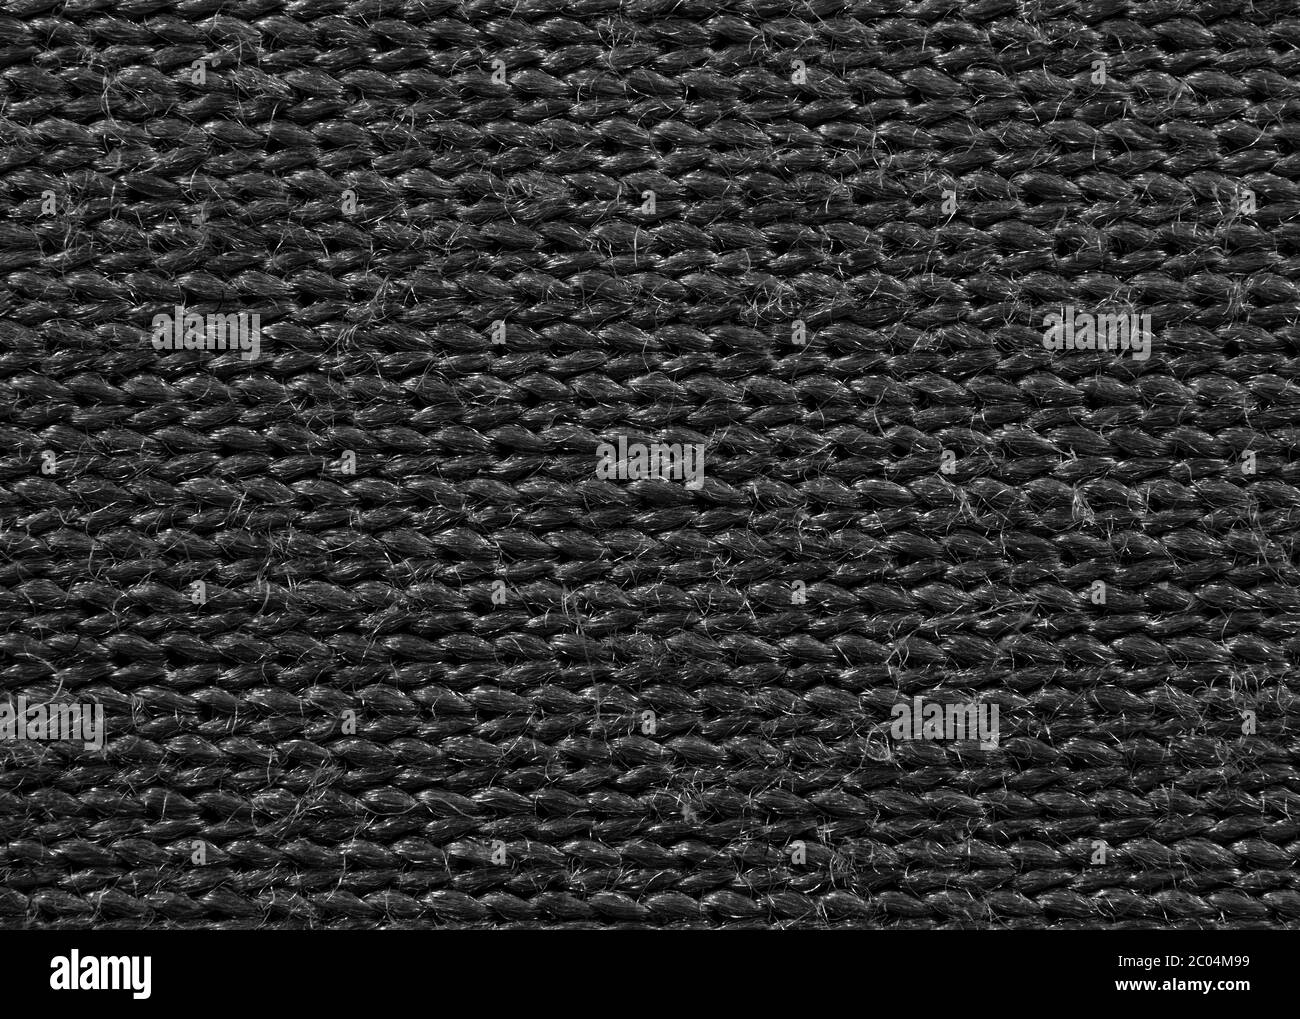 Makro-Fotografie von schwarzem Satin Stoff Textur für Hintergrund  Stockfotografie - Alamy